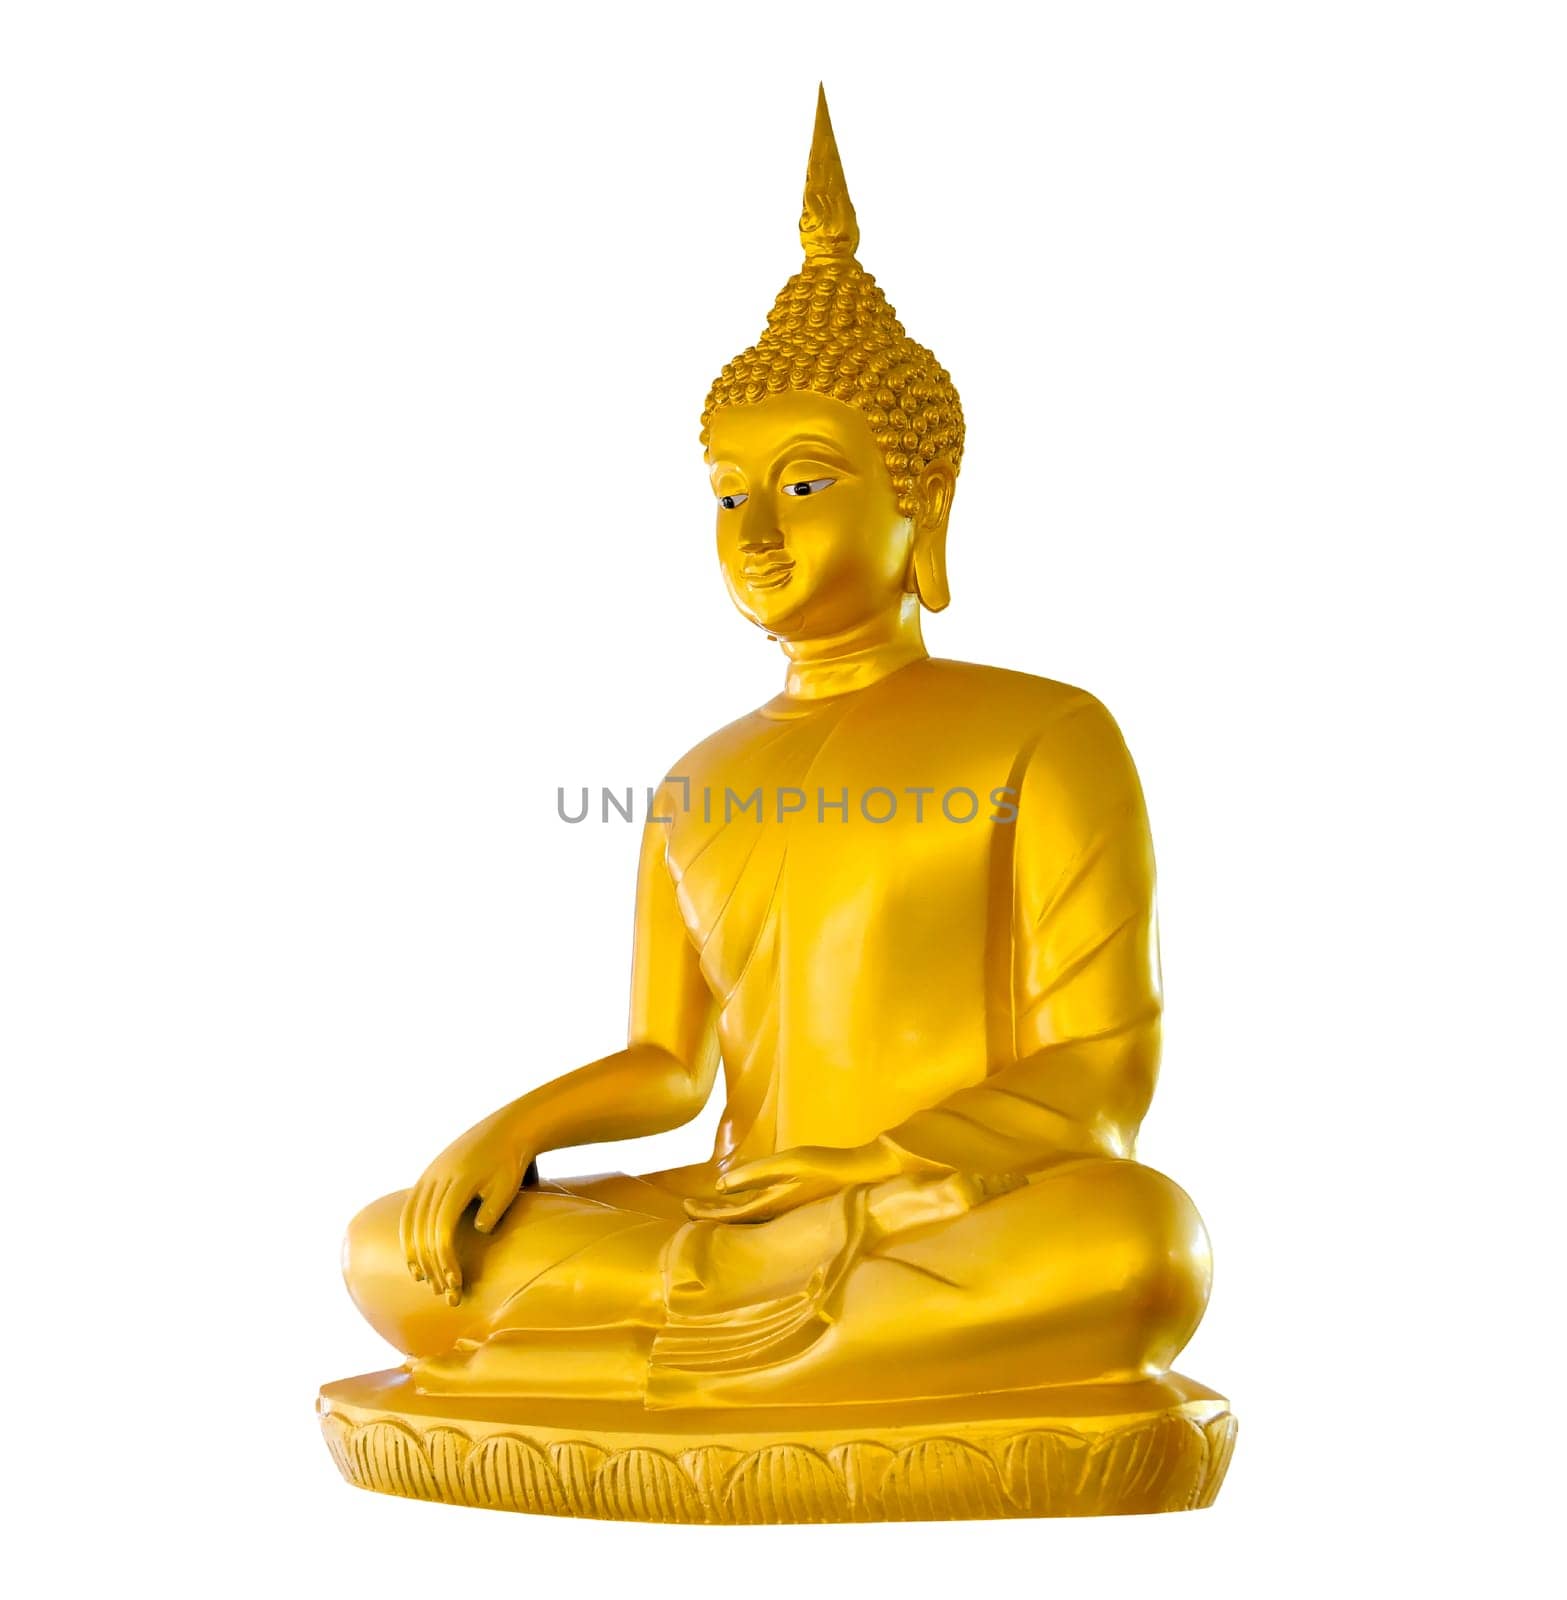 Buddha image on white background isolate by sarayut_thaneerat